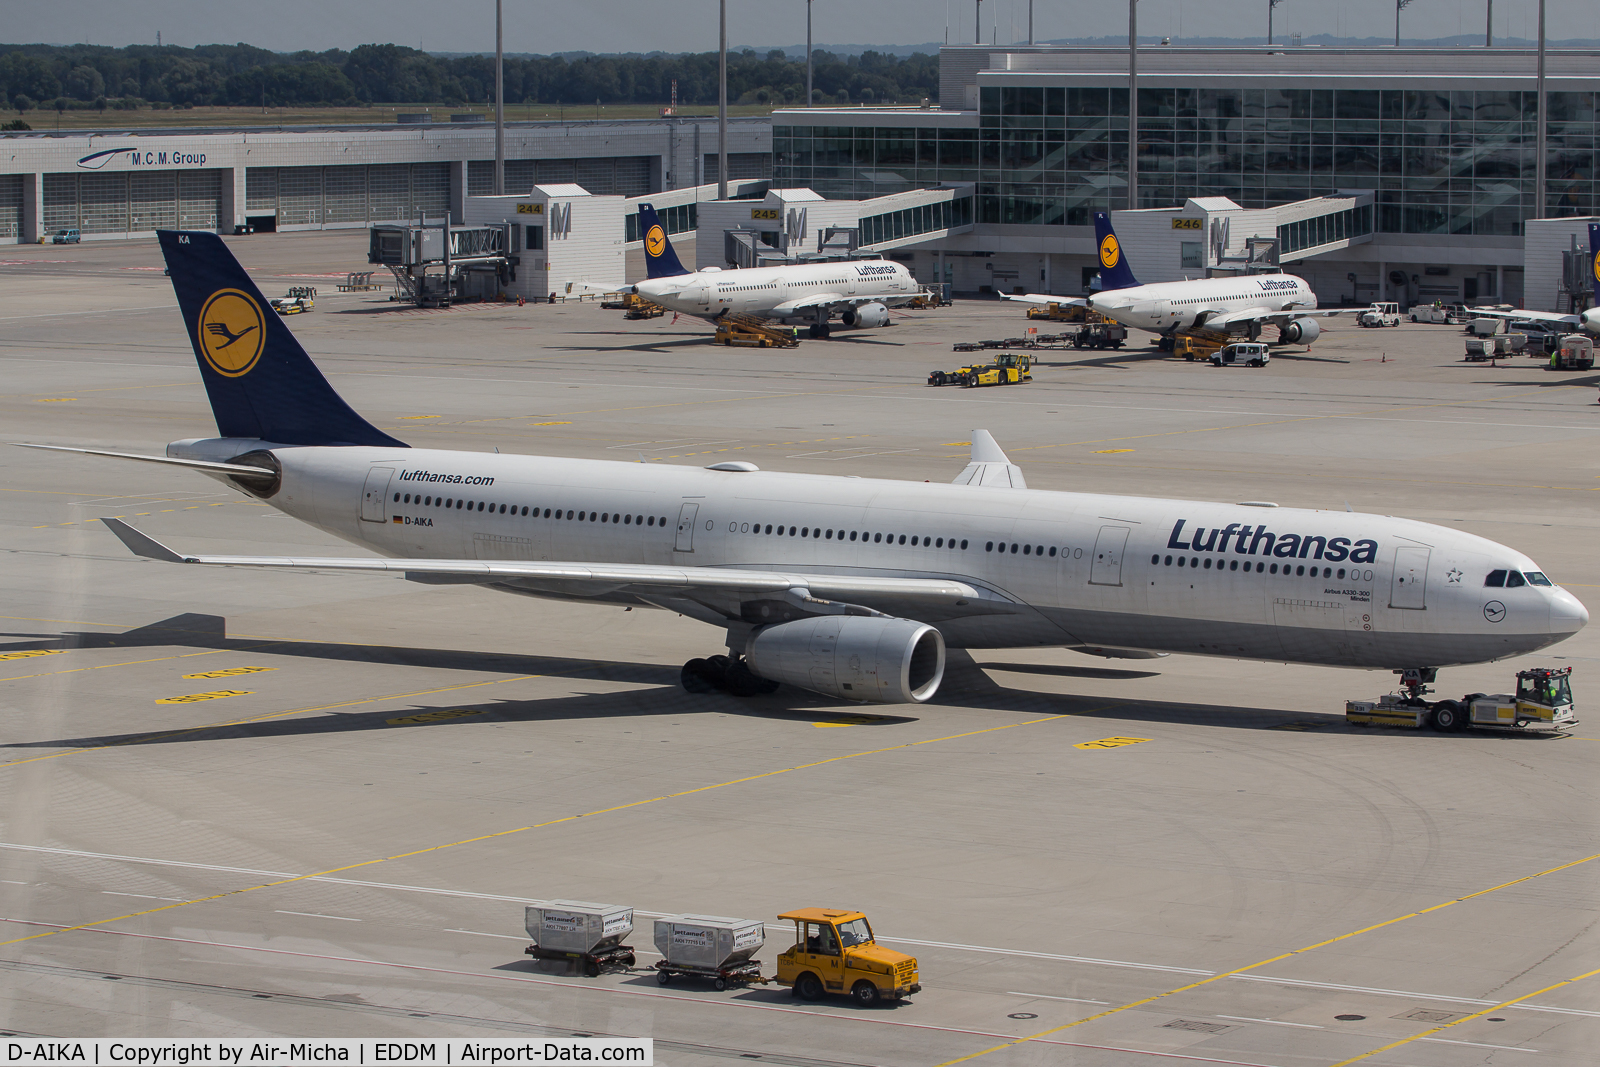 D-AIKA, 2004 Airbus A330-343X C/N 570, Lufthansa